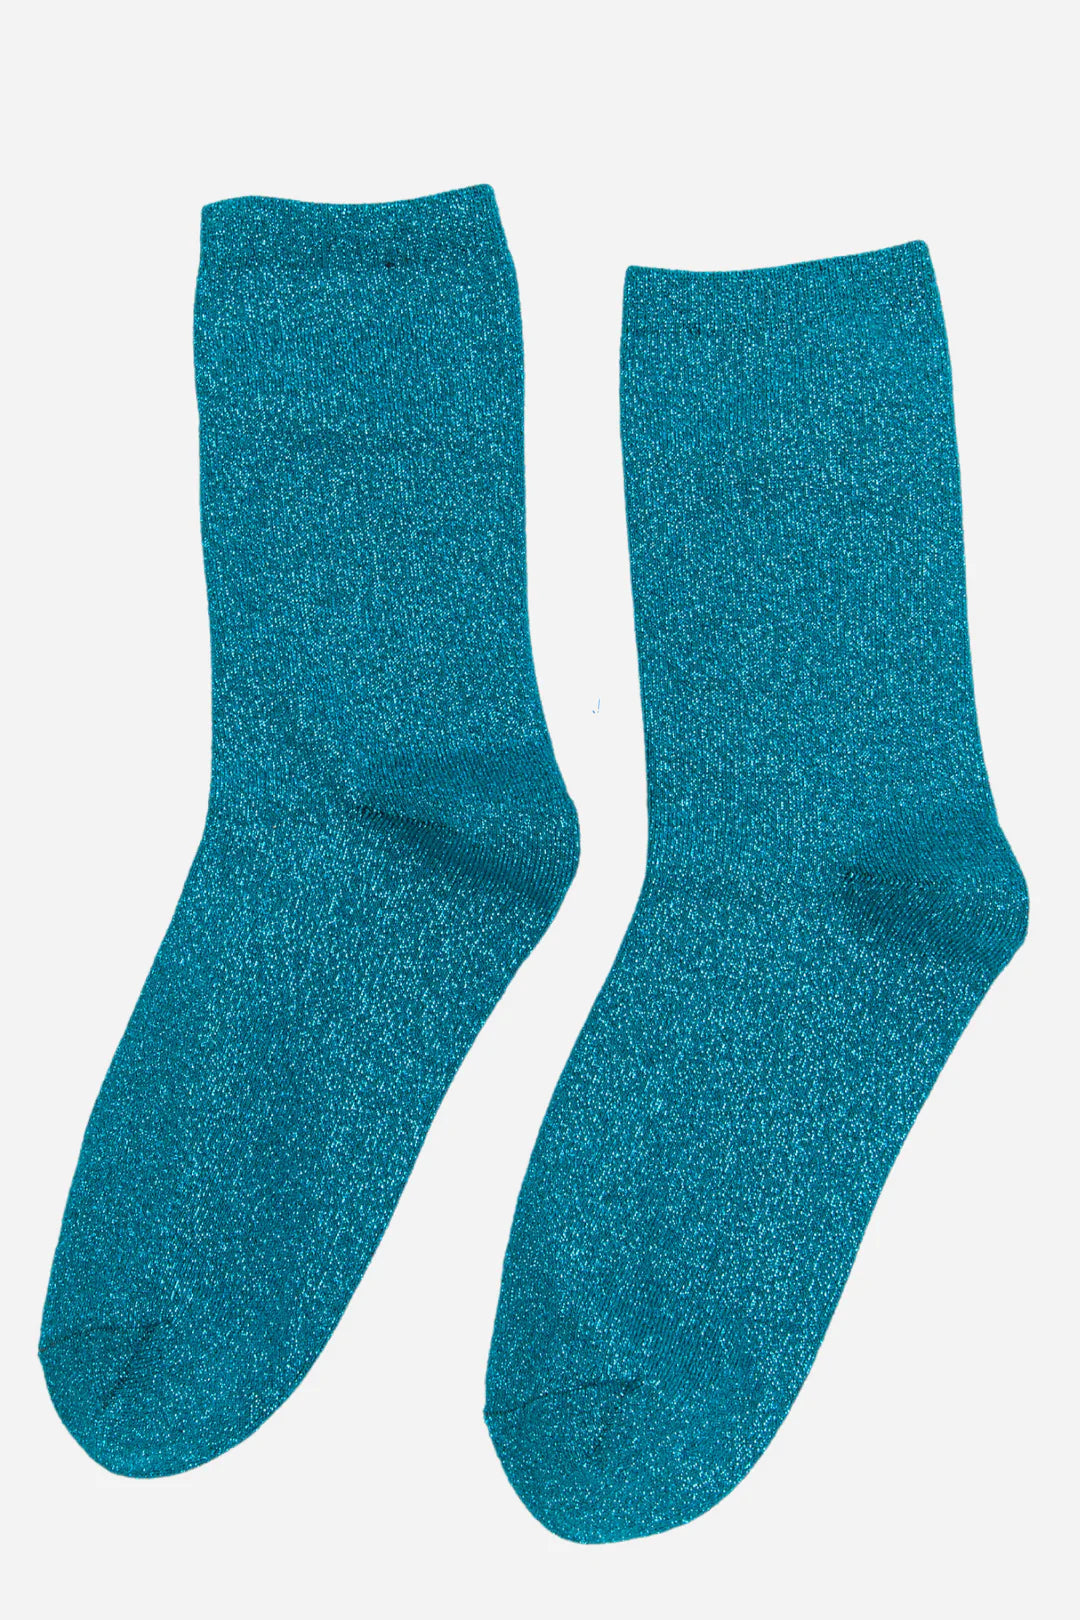 Glitter Socks - Teal